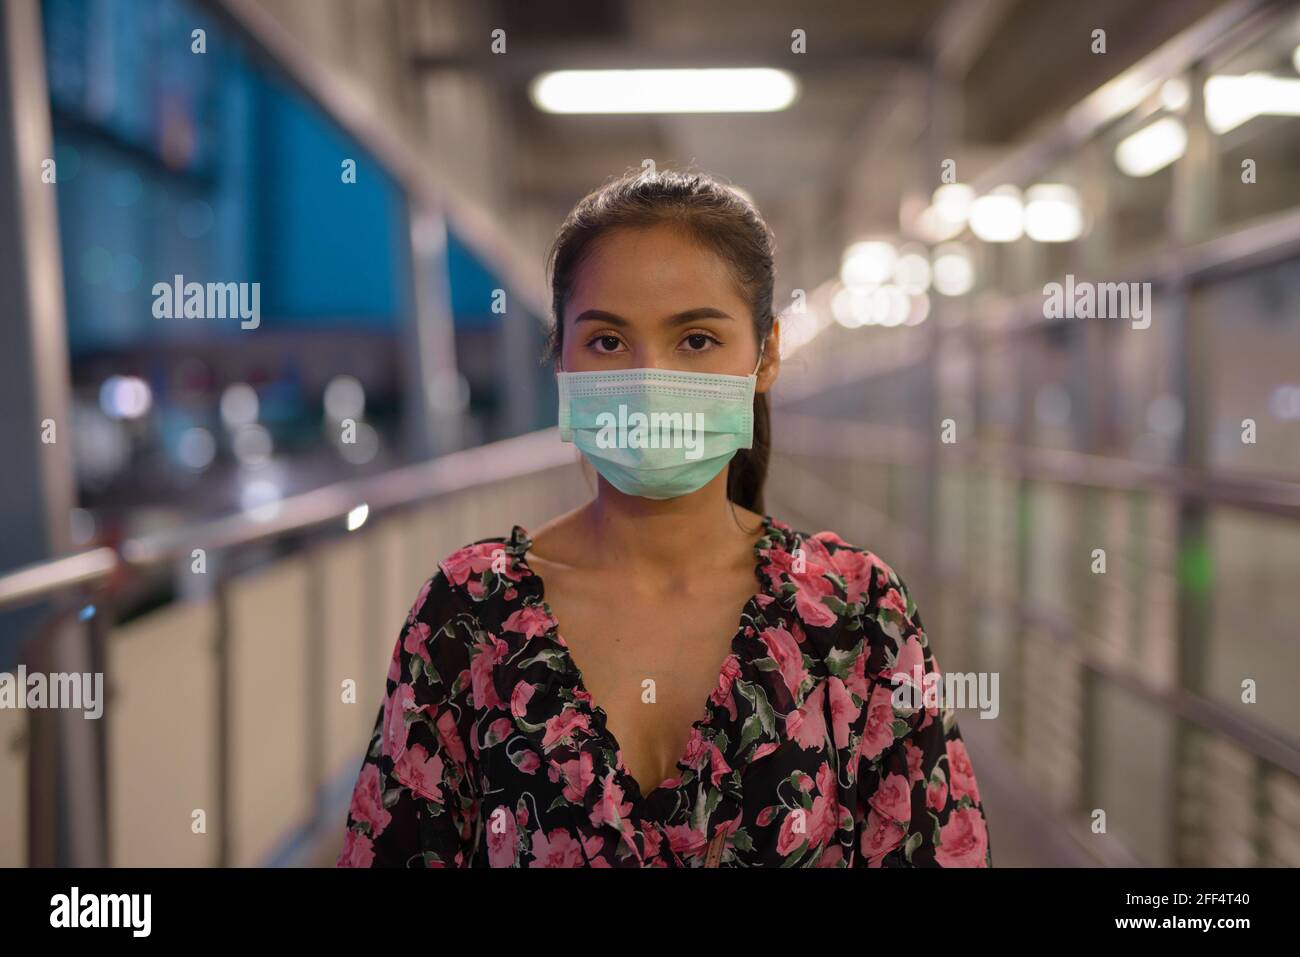 Ritratto di donna che indossa maschera per la protezione contro il coronavirus Covid-19 di notte Foto Stock